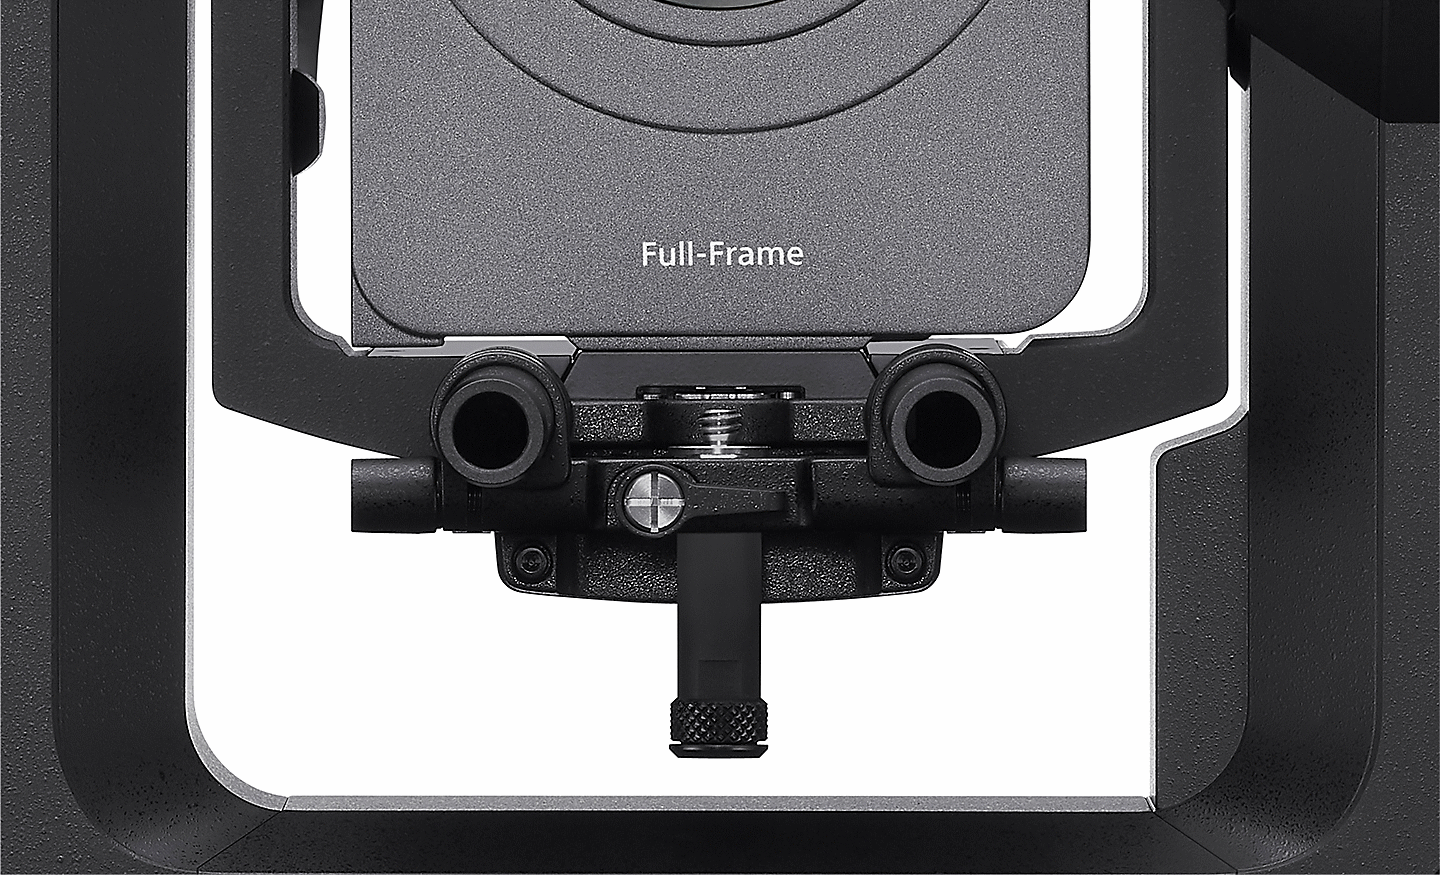 Obrázok fotoaparátu FR7 s dvomi tyčami objektívov.